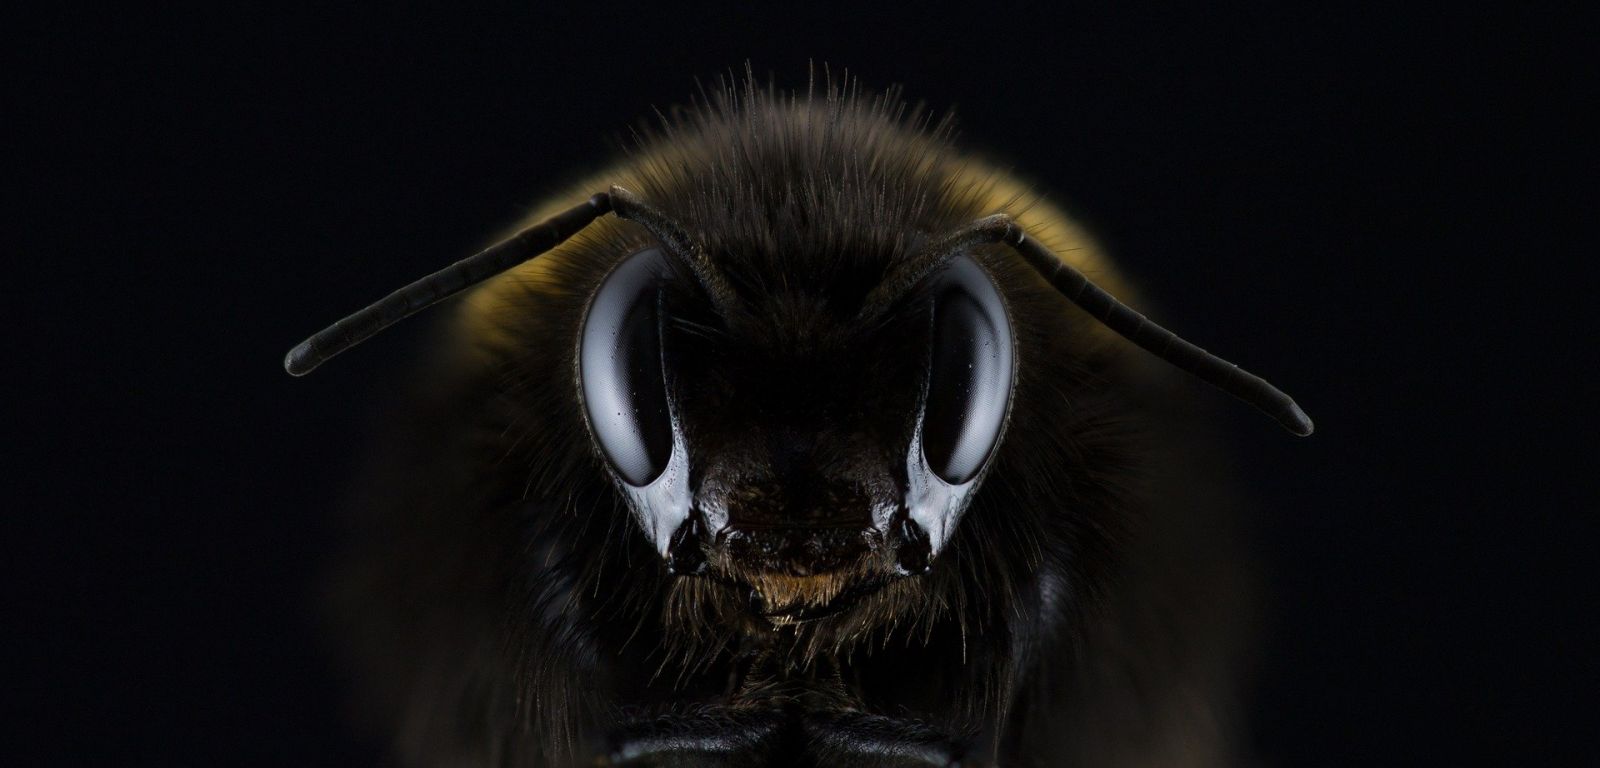 Частный дом в Люботине атаковали пчелы